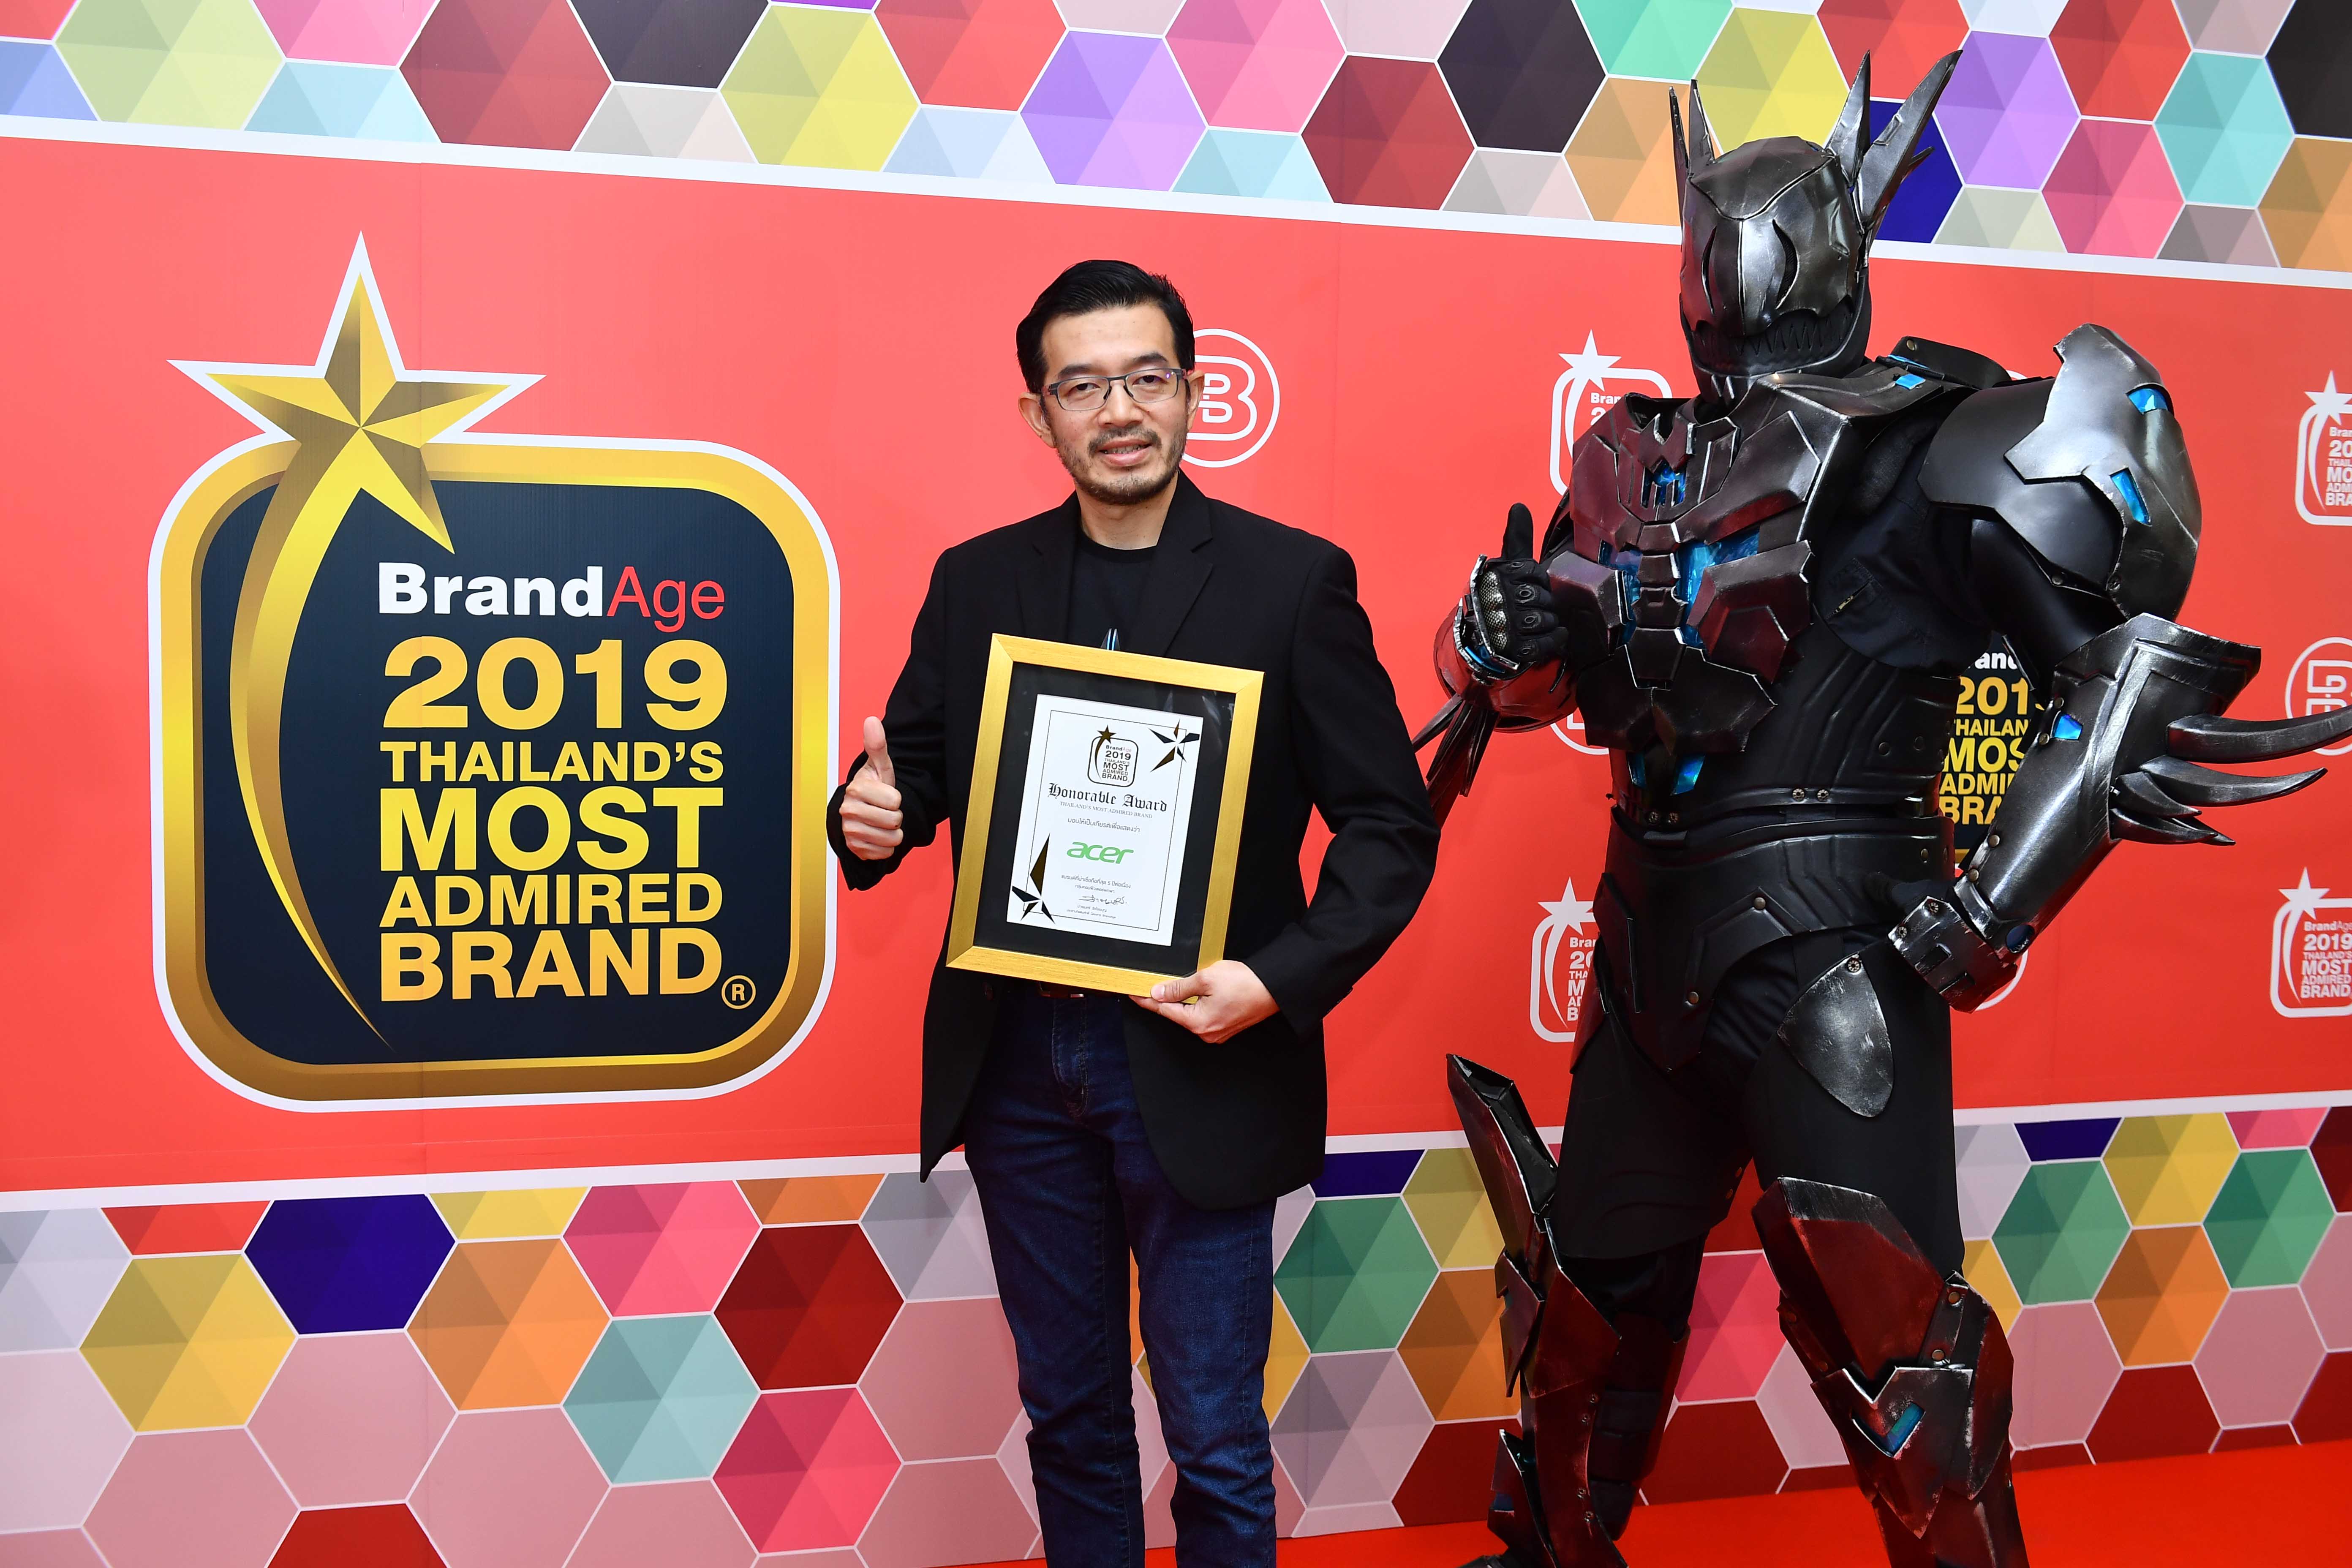 arr 2165 final เอเซอร์ ย้ำภาพผู้นำนวัตกรรมไอที รับรางวัล Thailand’s Most Admired Brand 2019 สุดยอดแบรนด์ครองใจมหาชนเป็นปีที่ 9 ในกลุ่มคอมพิวเตอร์พกพาที่น่าเชื่อถือที่สุด